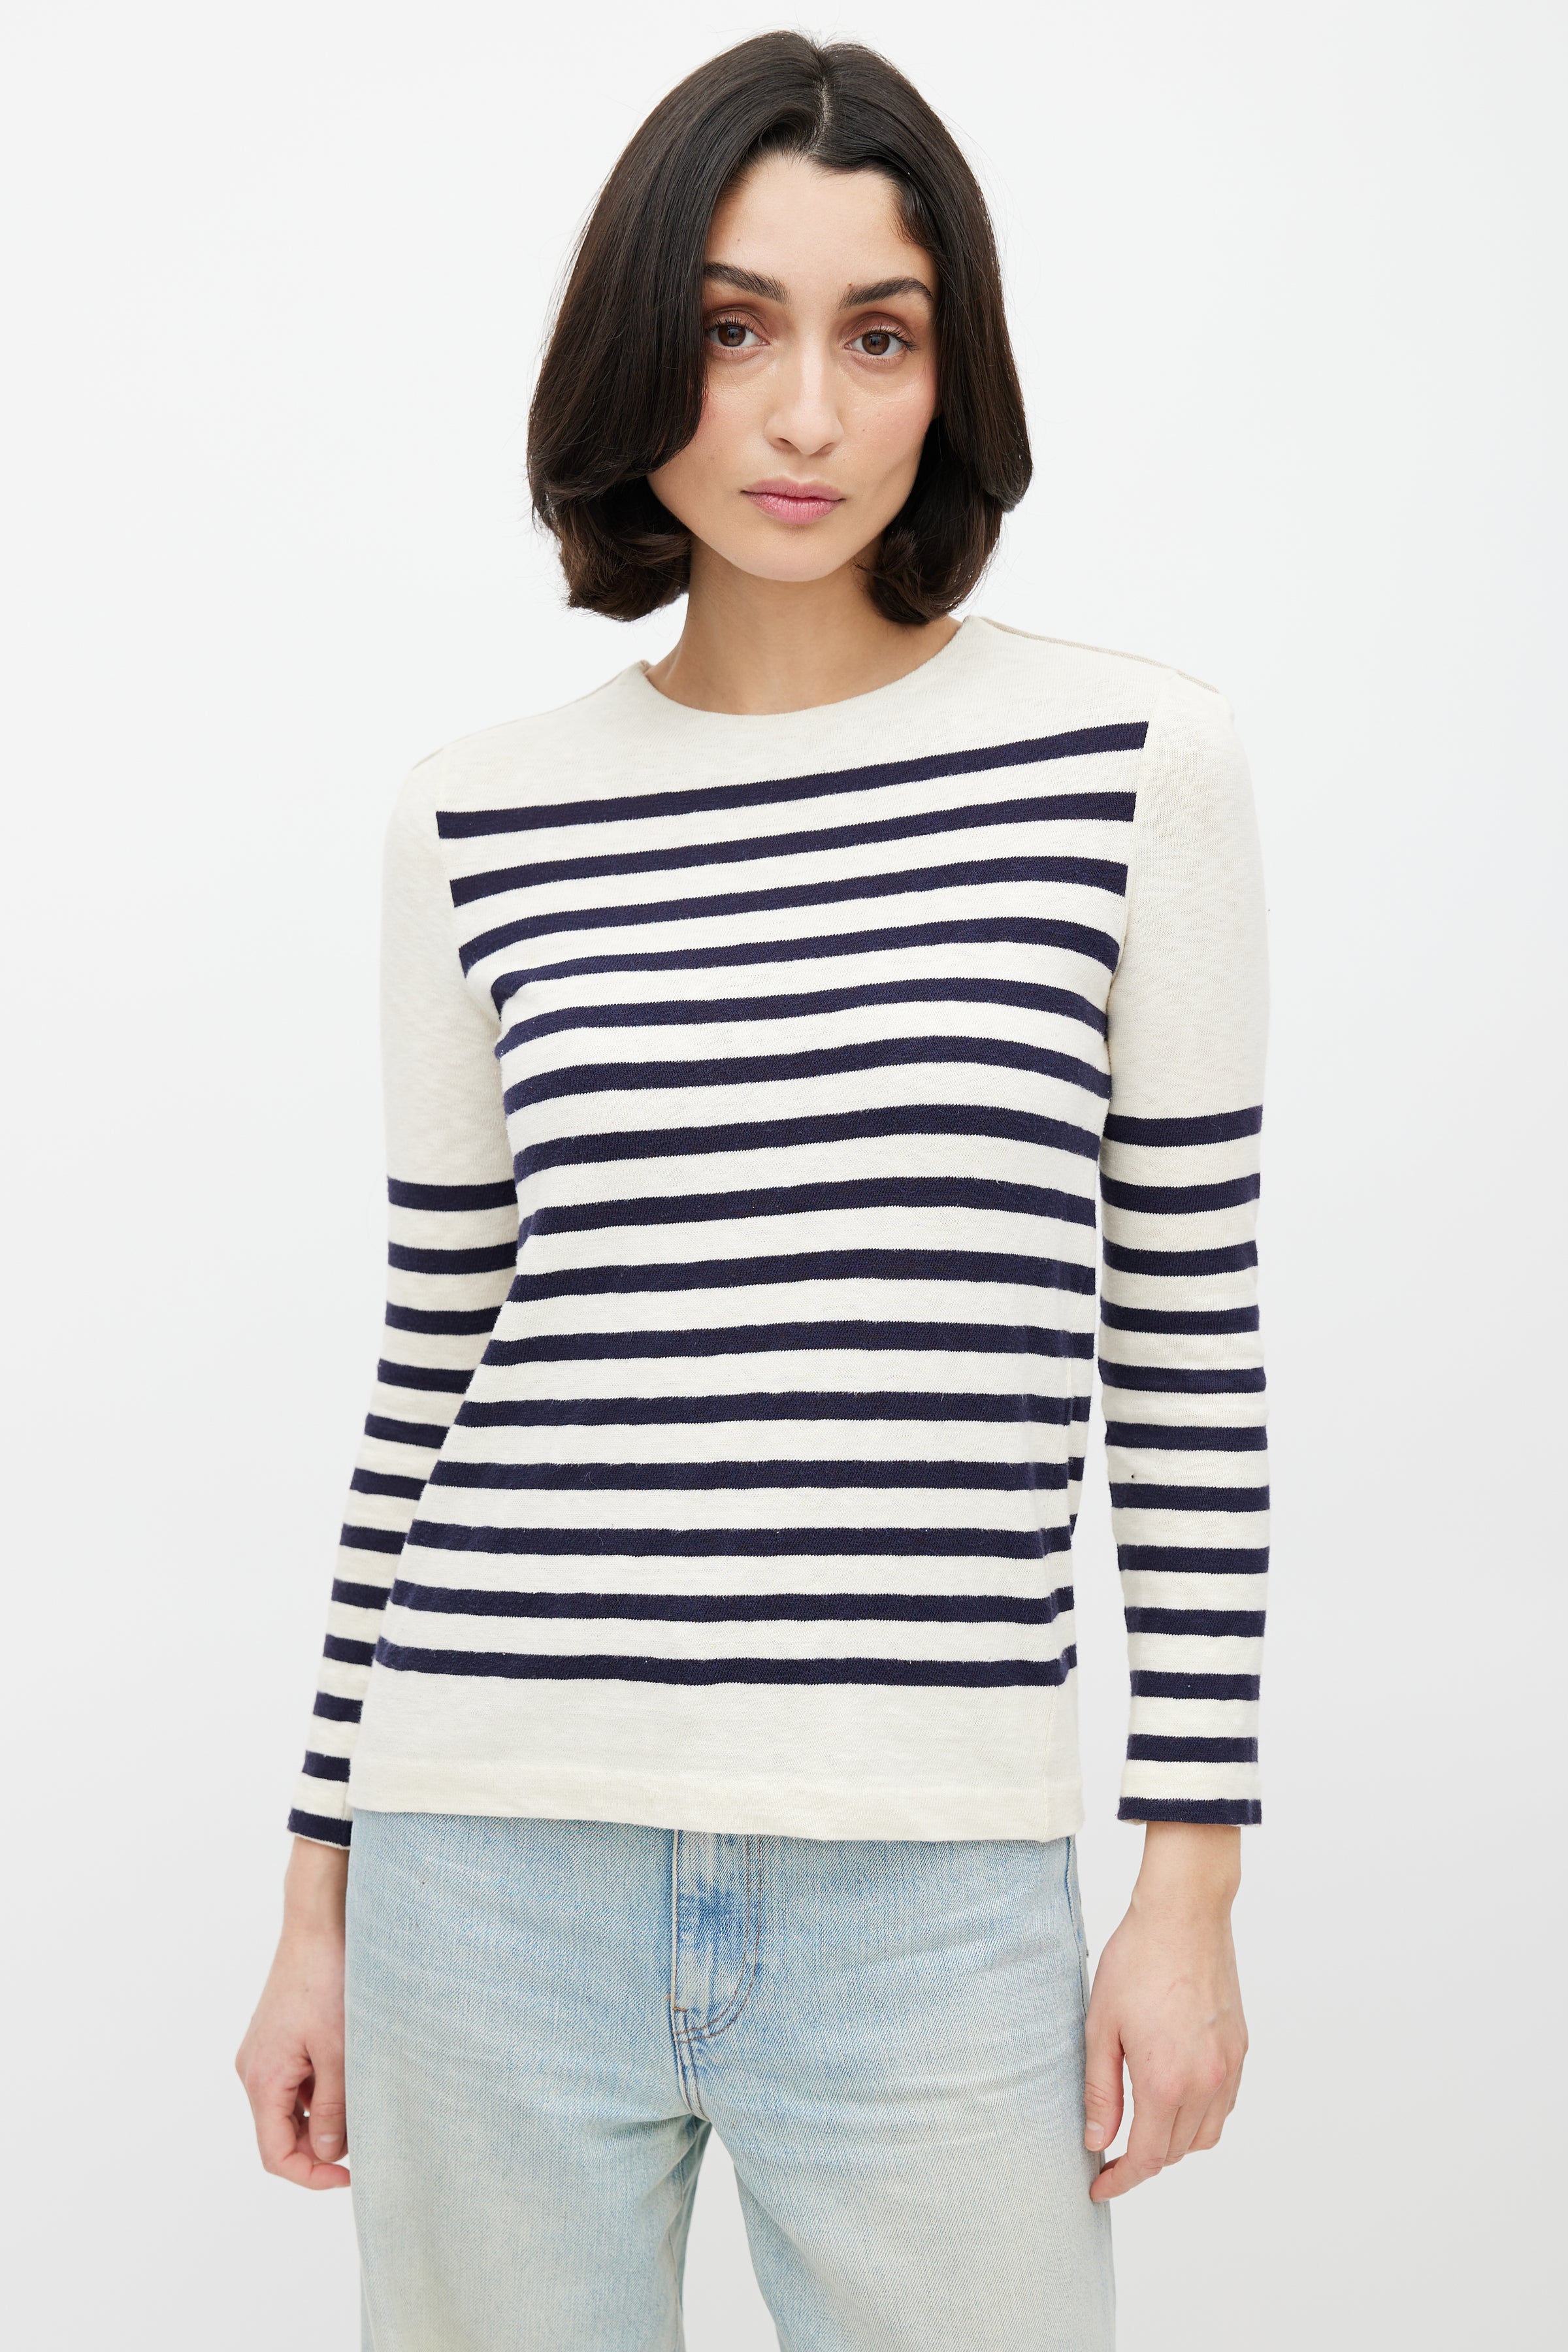 Celine Boat Neck Striped Sweater in Blue